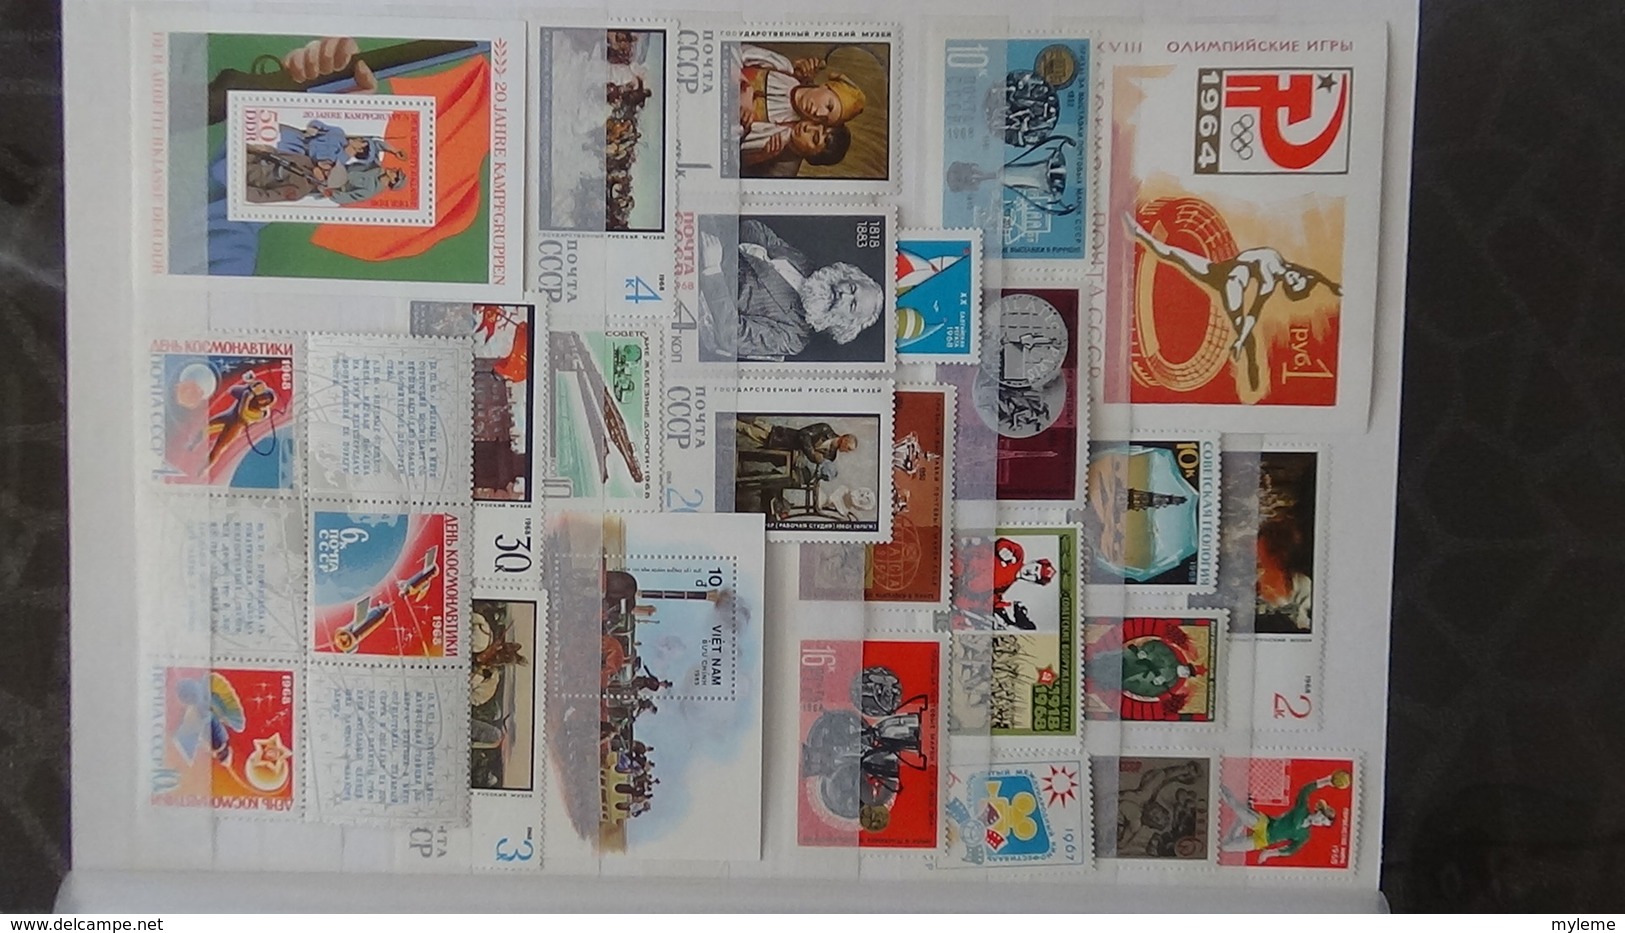 Gros album (64 photos) de timbres et 151 blocs ** de divers pays dont quelques NON DENTELES. Côte très sympa